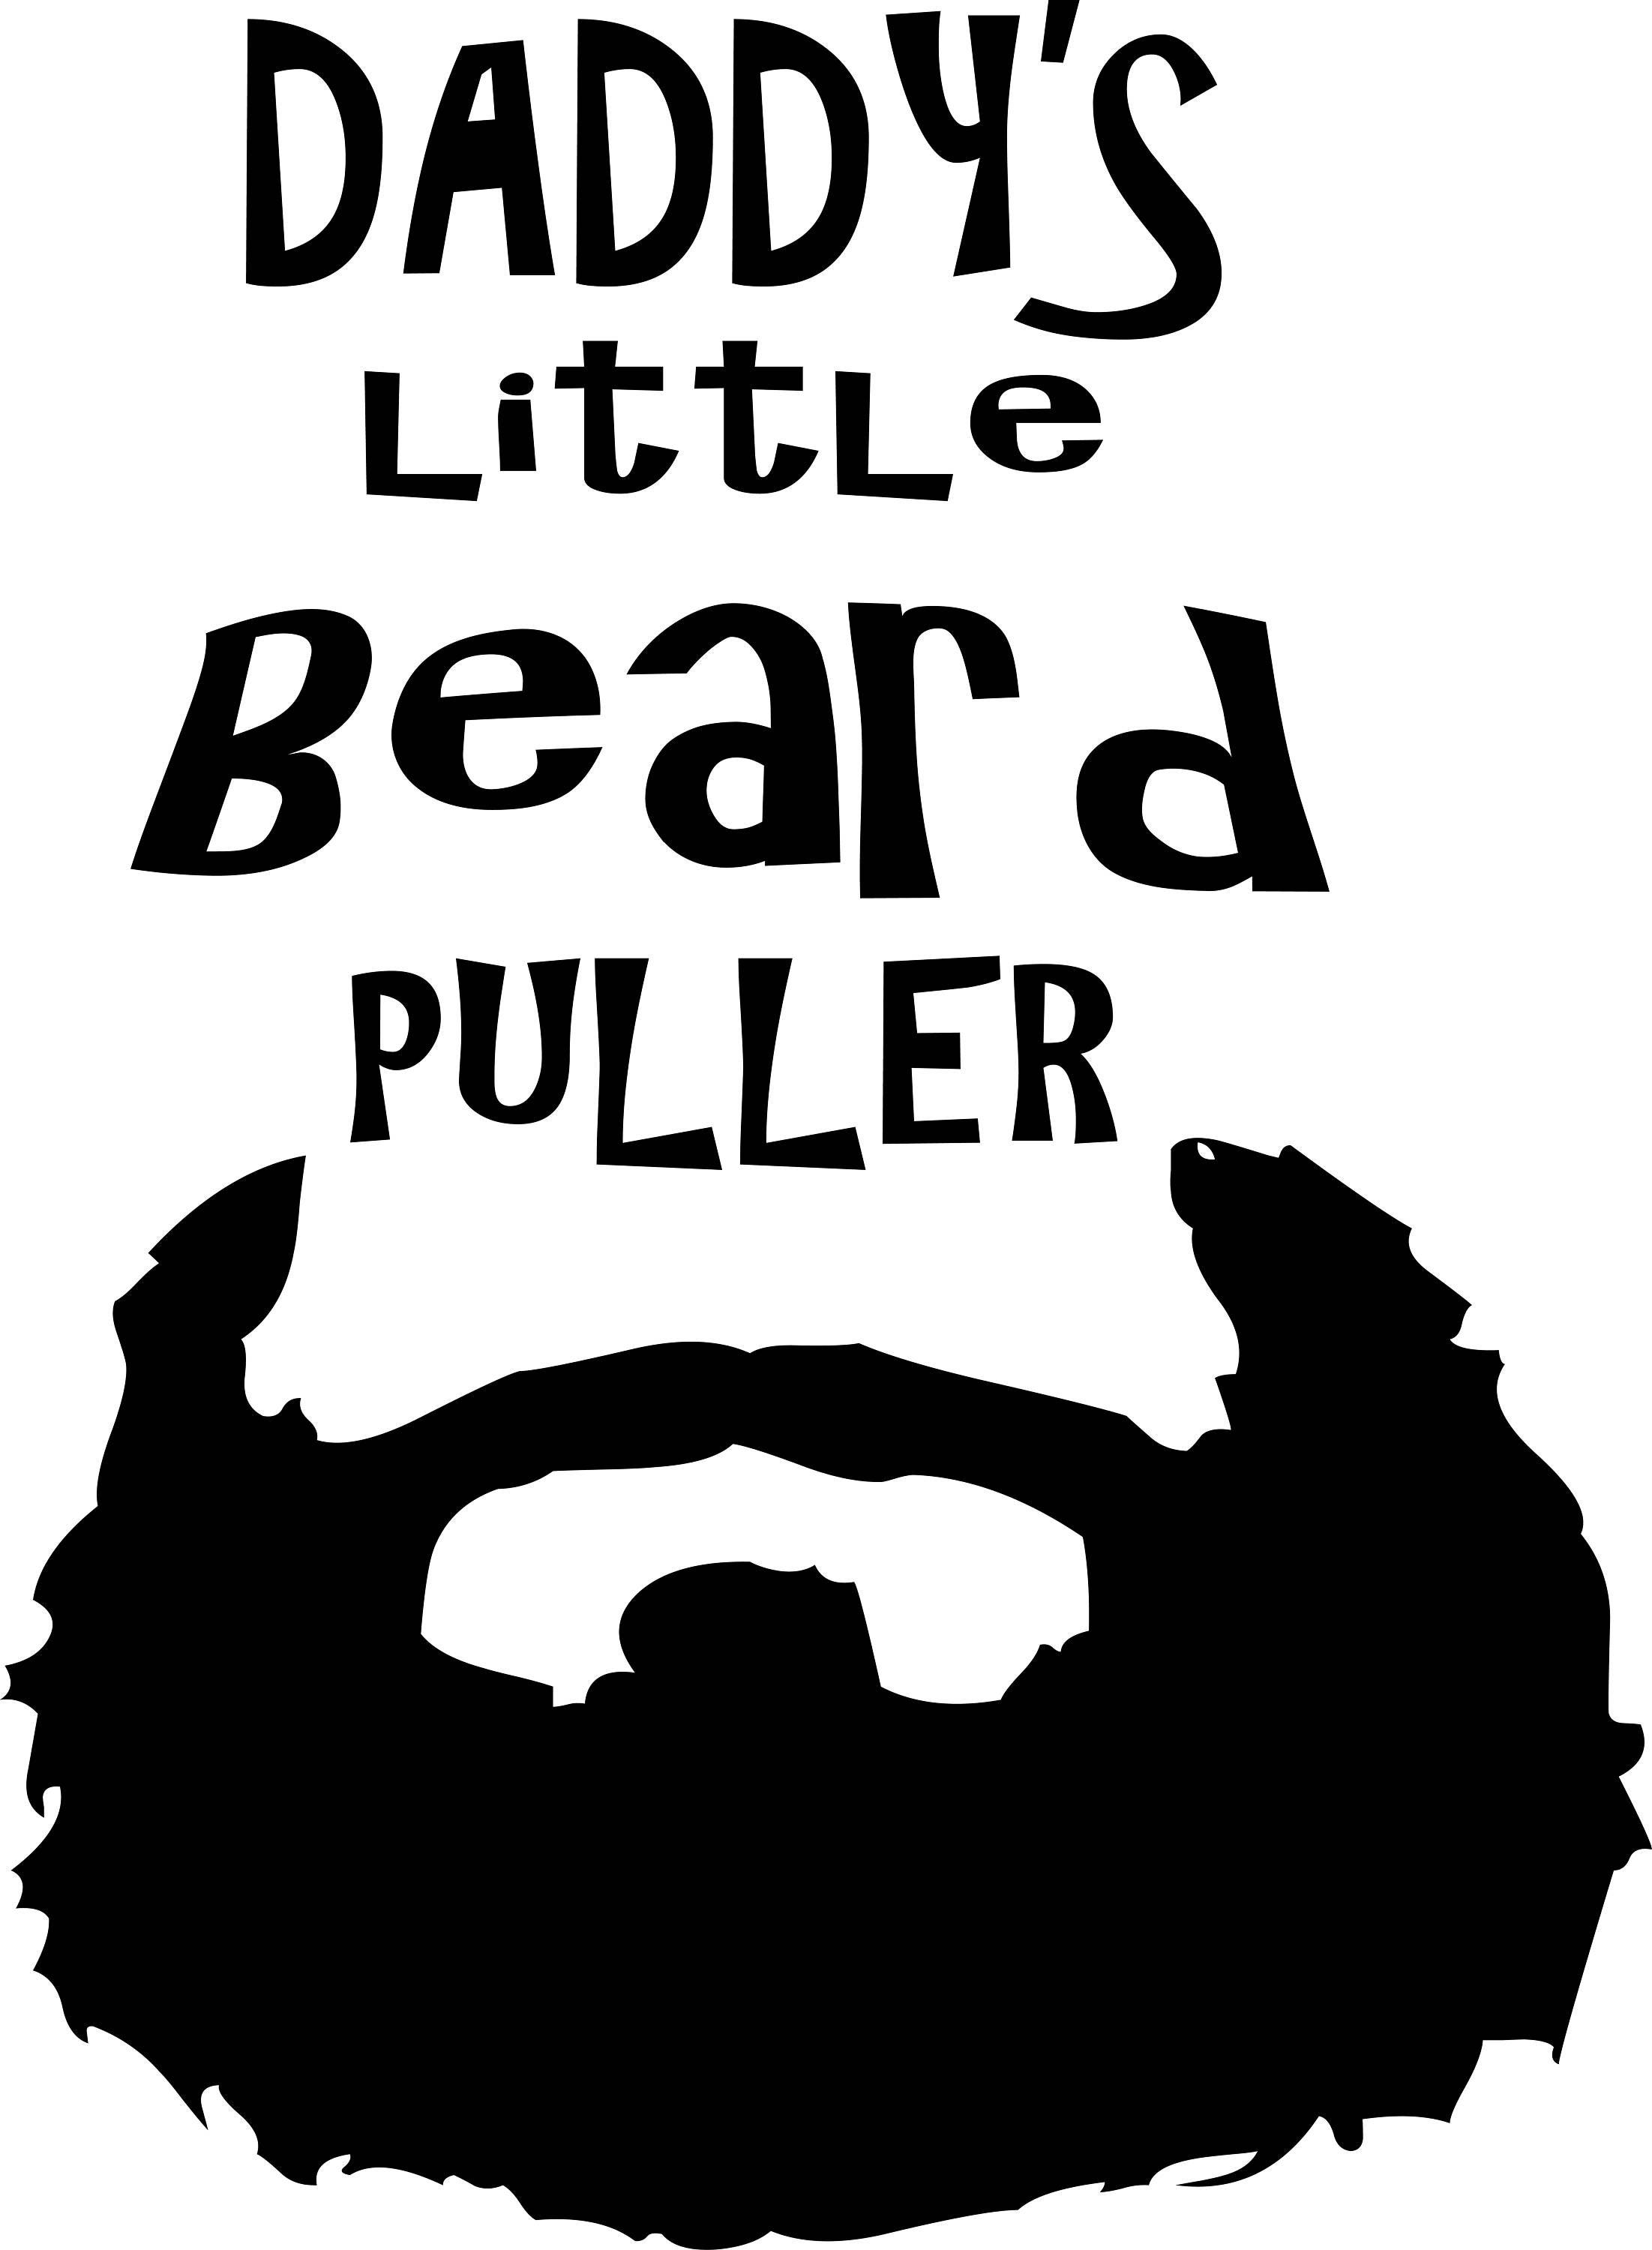 Download Daddy's Little Beard Puller SVG Digital Download | Etsy